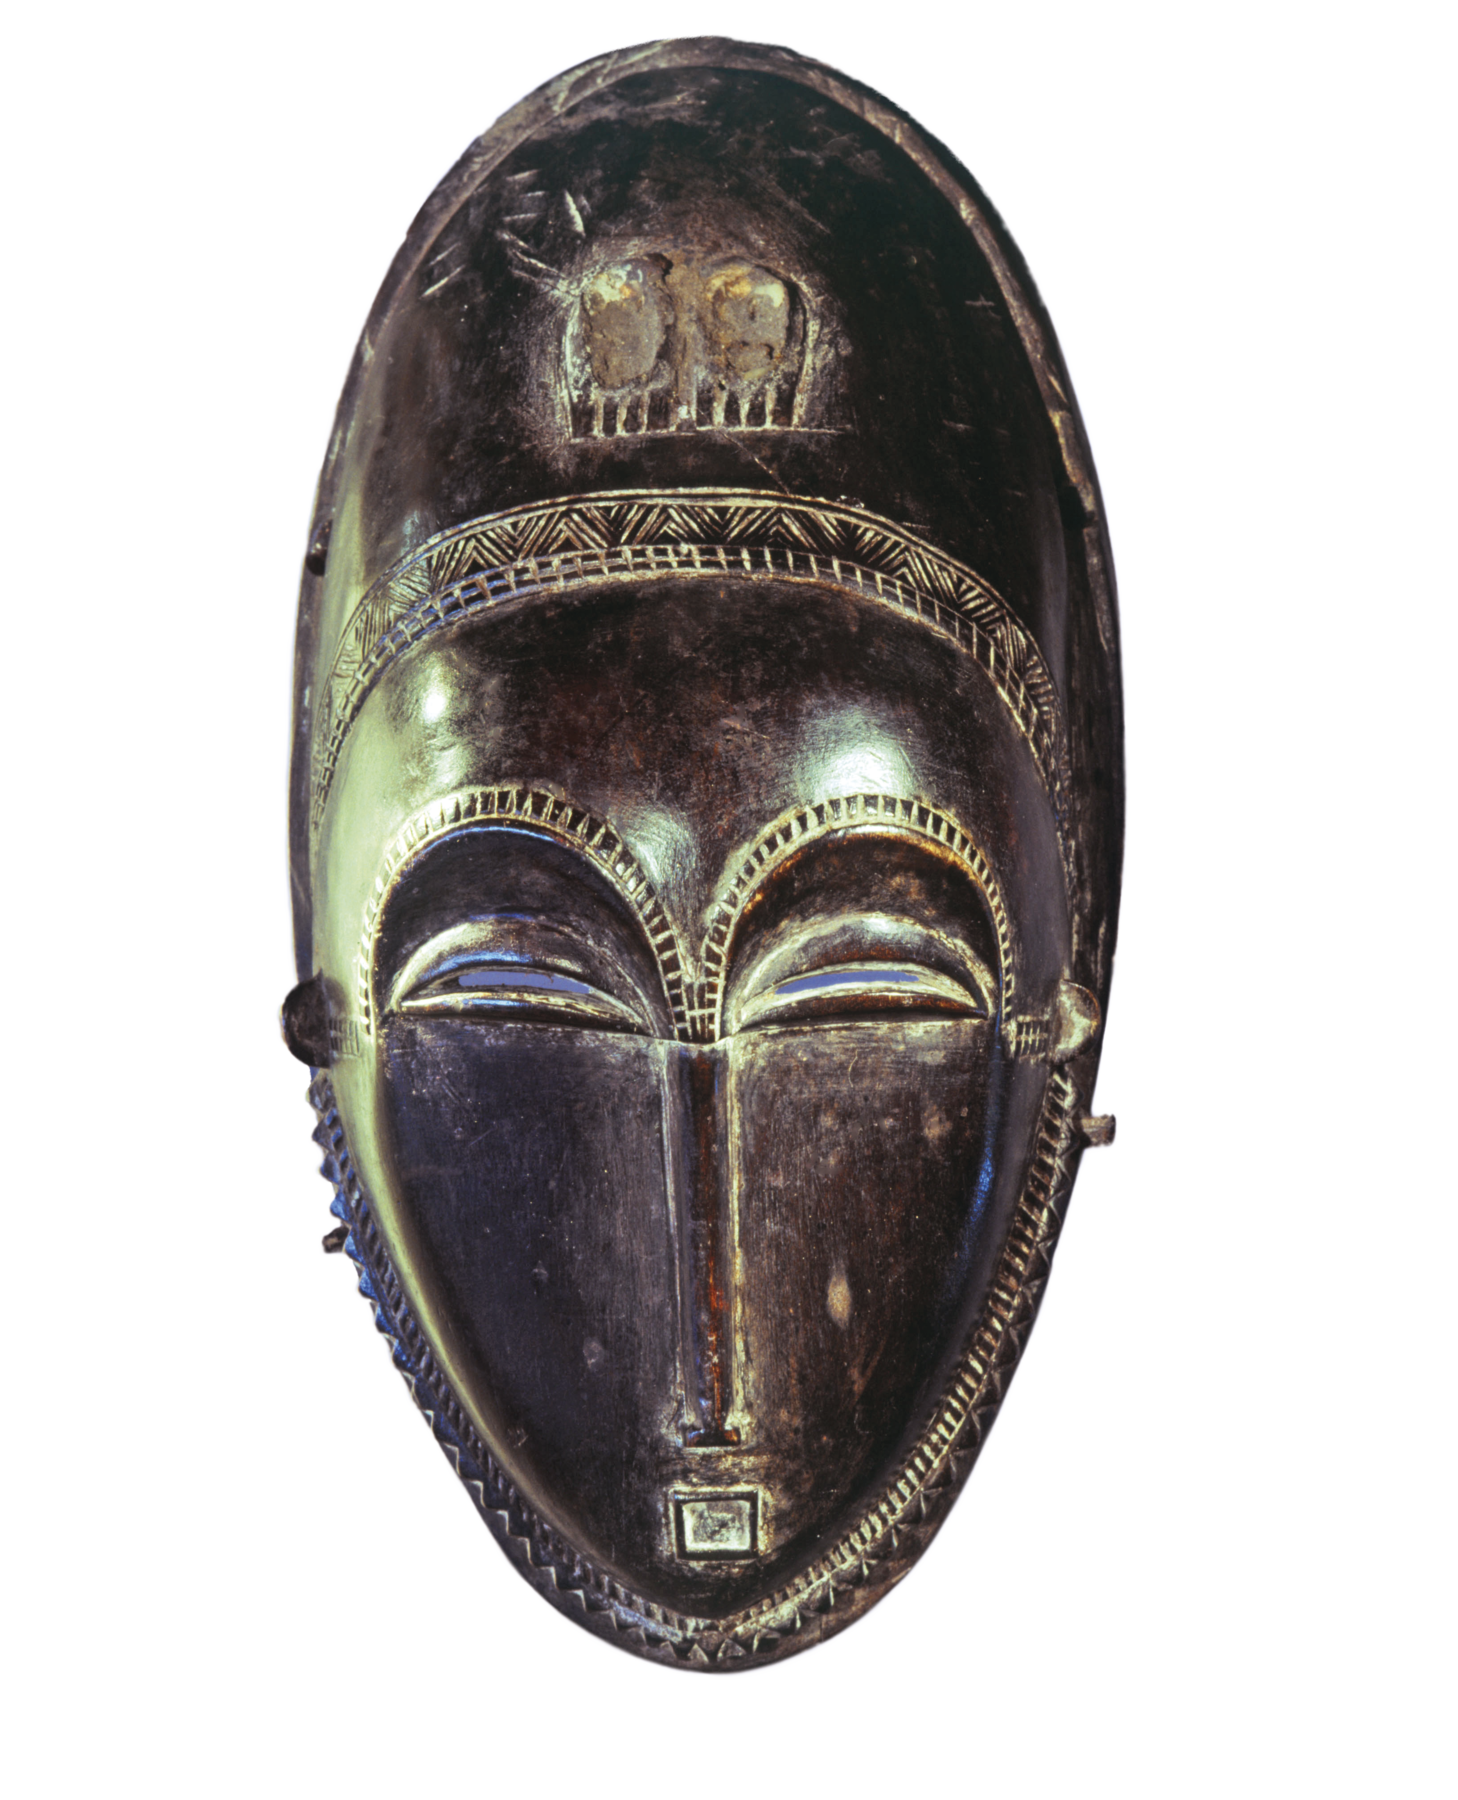 Máscara. Objeto de madeira, em formato oval, com a representação de olhos semifechados, nariz afilado e boca pequena, contornado por entalhes lineares.